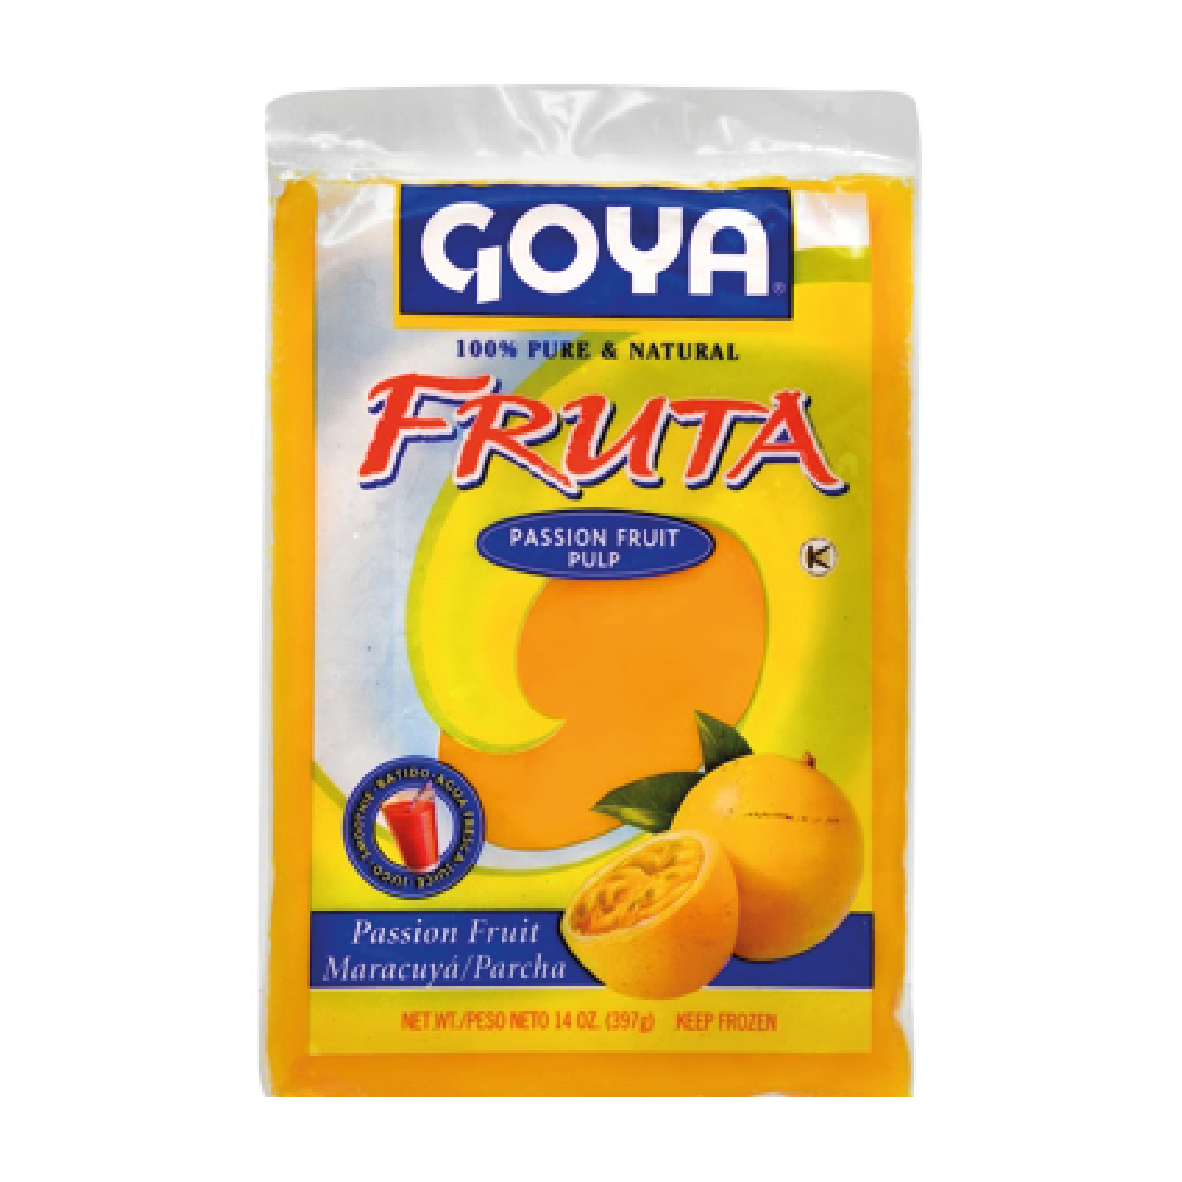 Goya Passion Fruit Pulp 397g(Frozen)